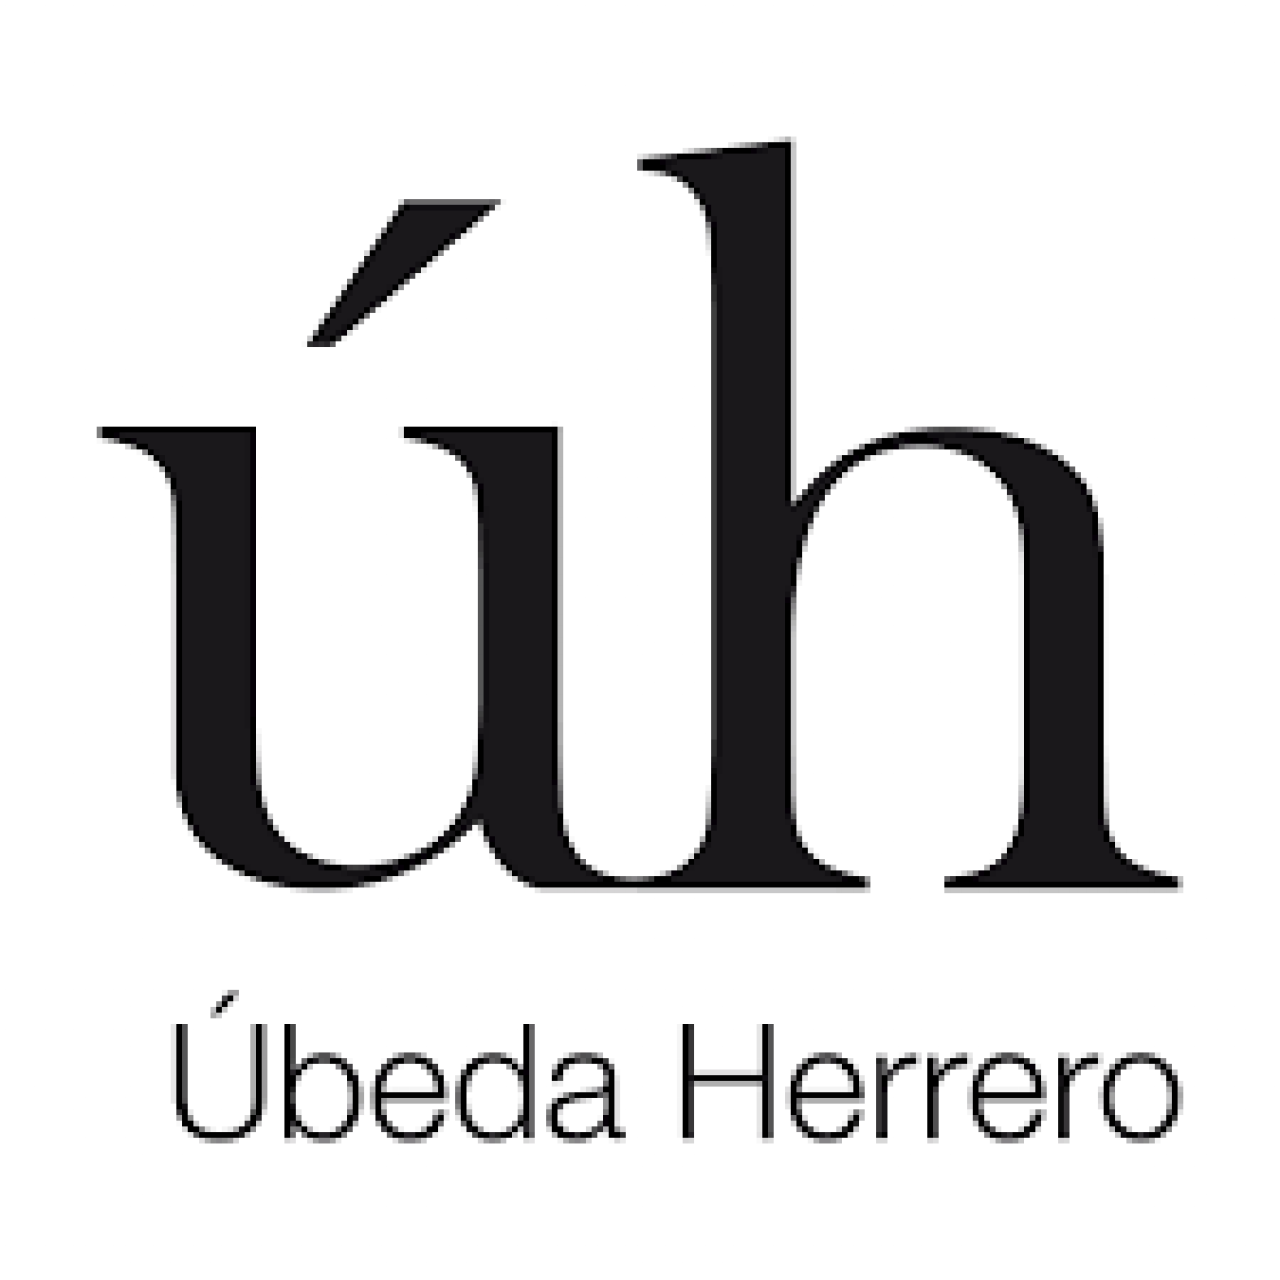 UBEDA HERRERO